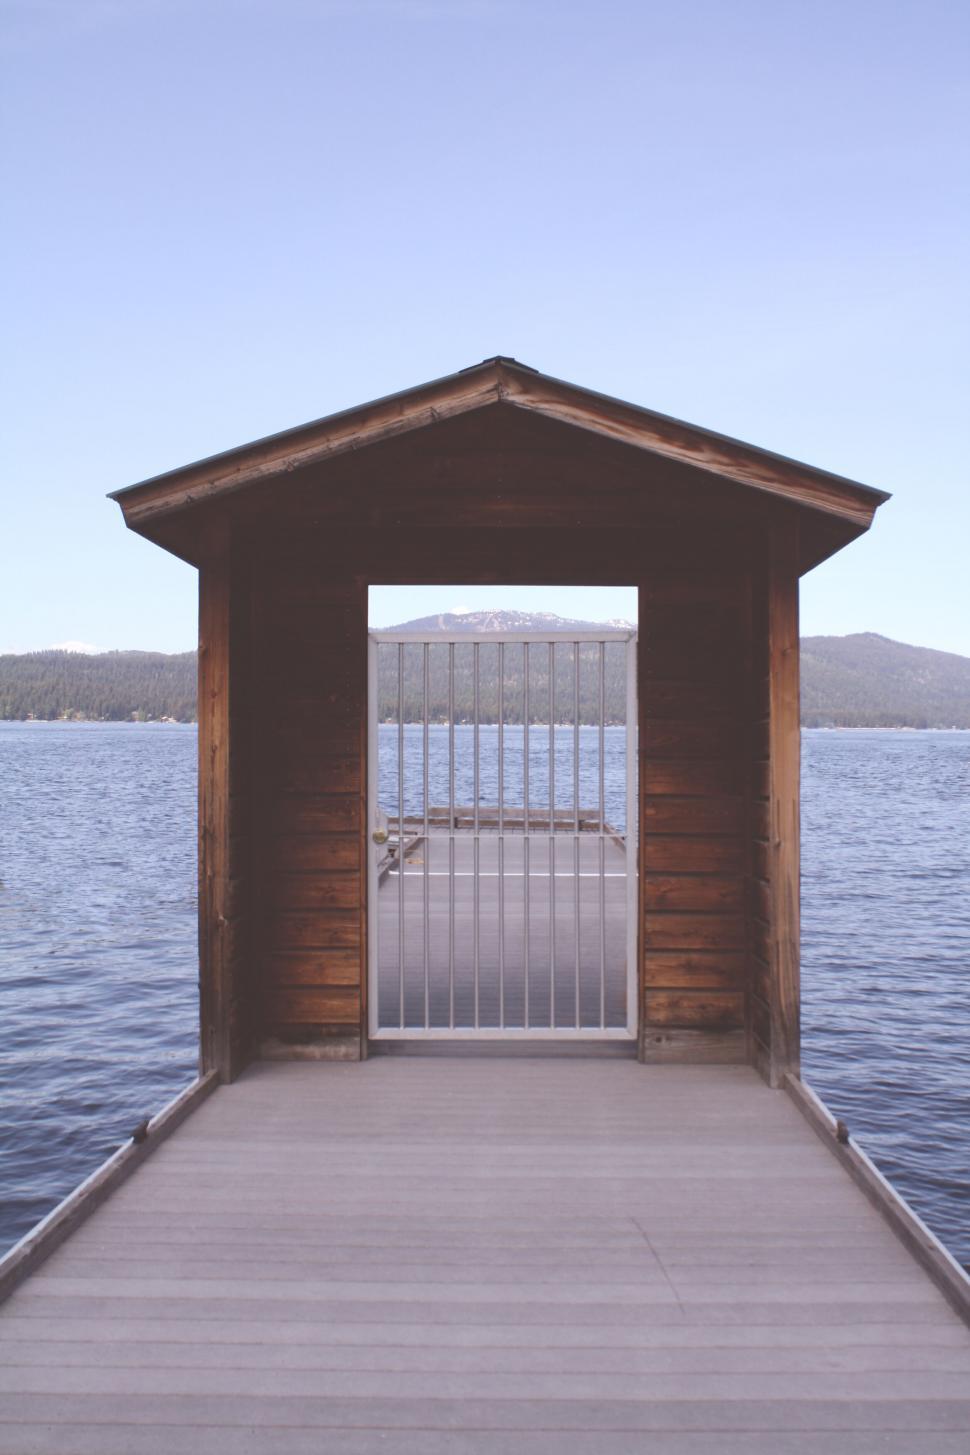 Free Image of Cabin doorway framing a lake view 